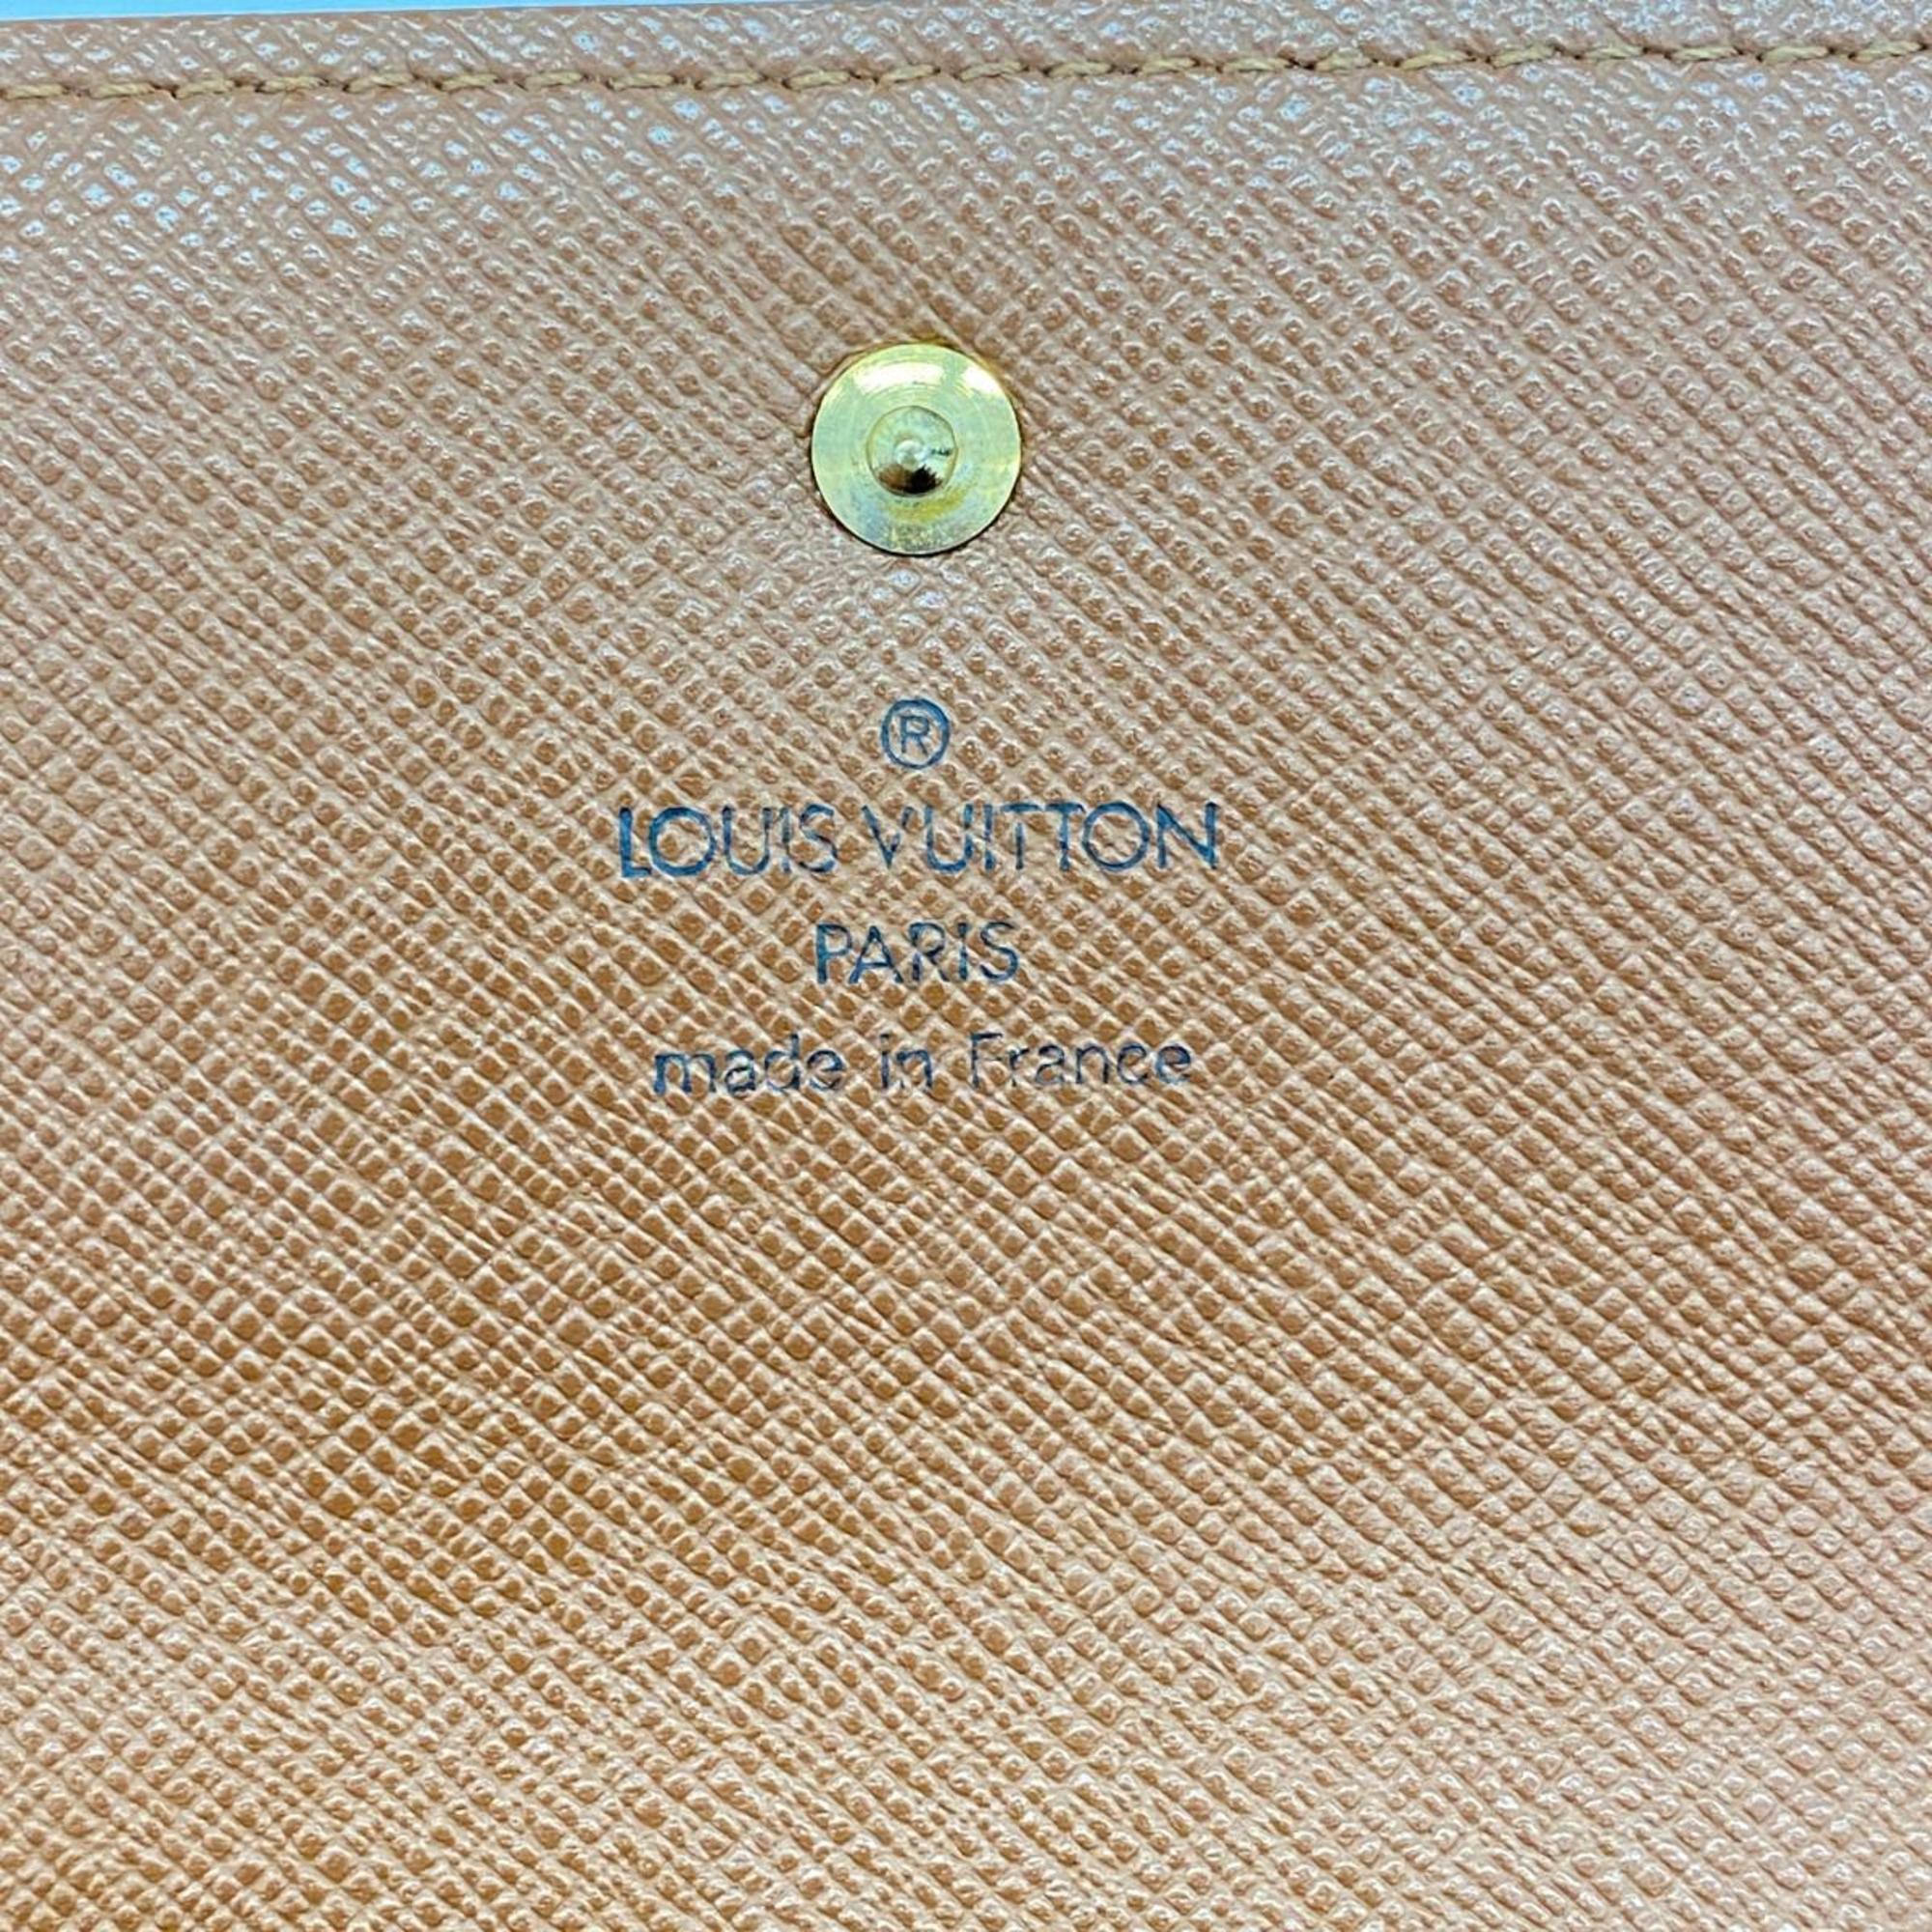 ルイ・ヴィトン(Louis Vuitton) ルイ・ヴィトン 三つ折り長財布 モノグラム ポルトトレゾールインターナショナル M61215 ブラウンメンズ レディース